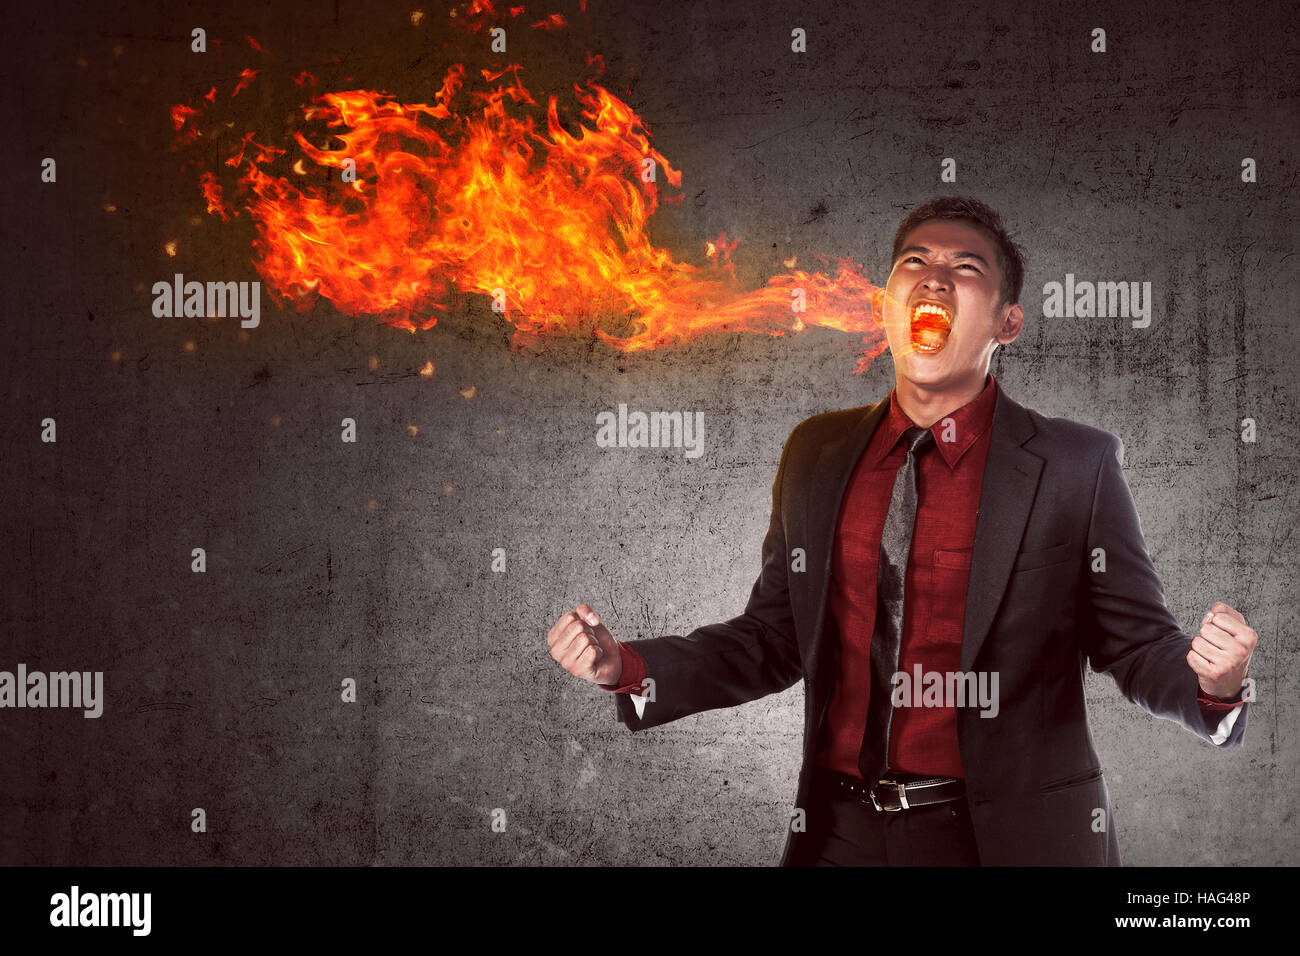 Bild von jungen asiatischen Geschäftsmann im Zorn in Flamme brennen Stockfoto